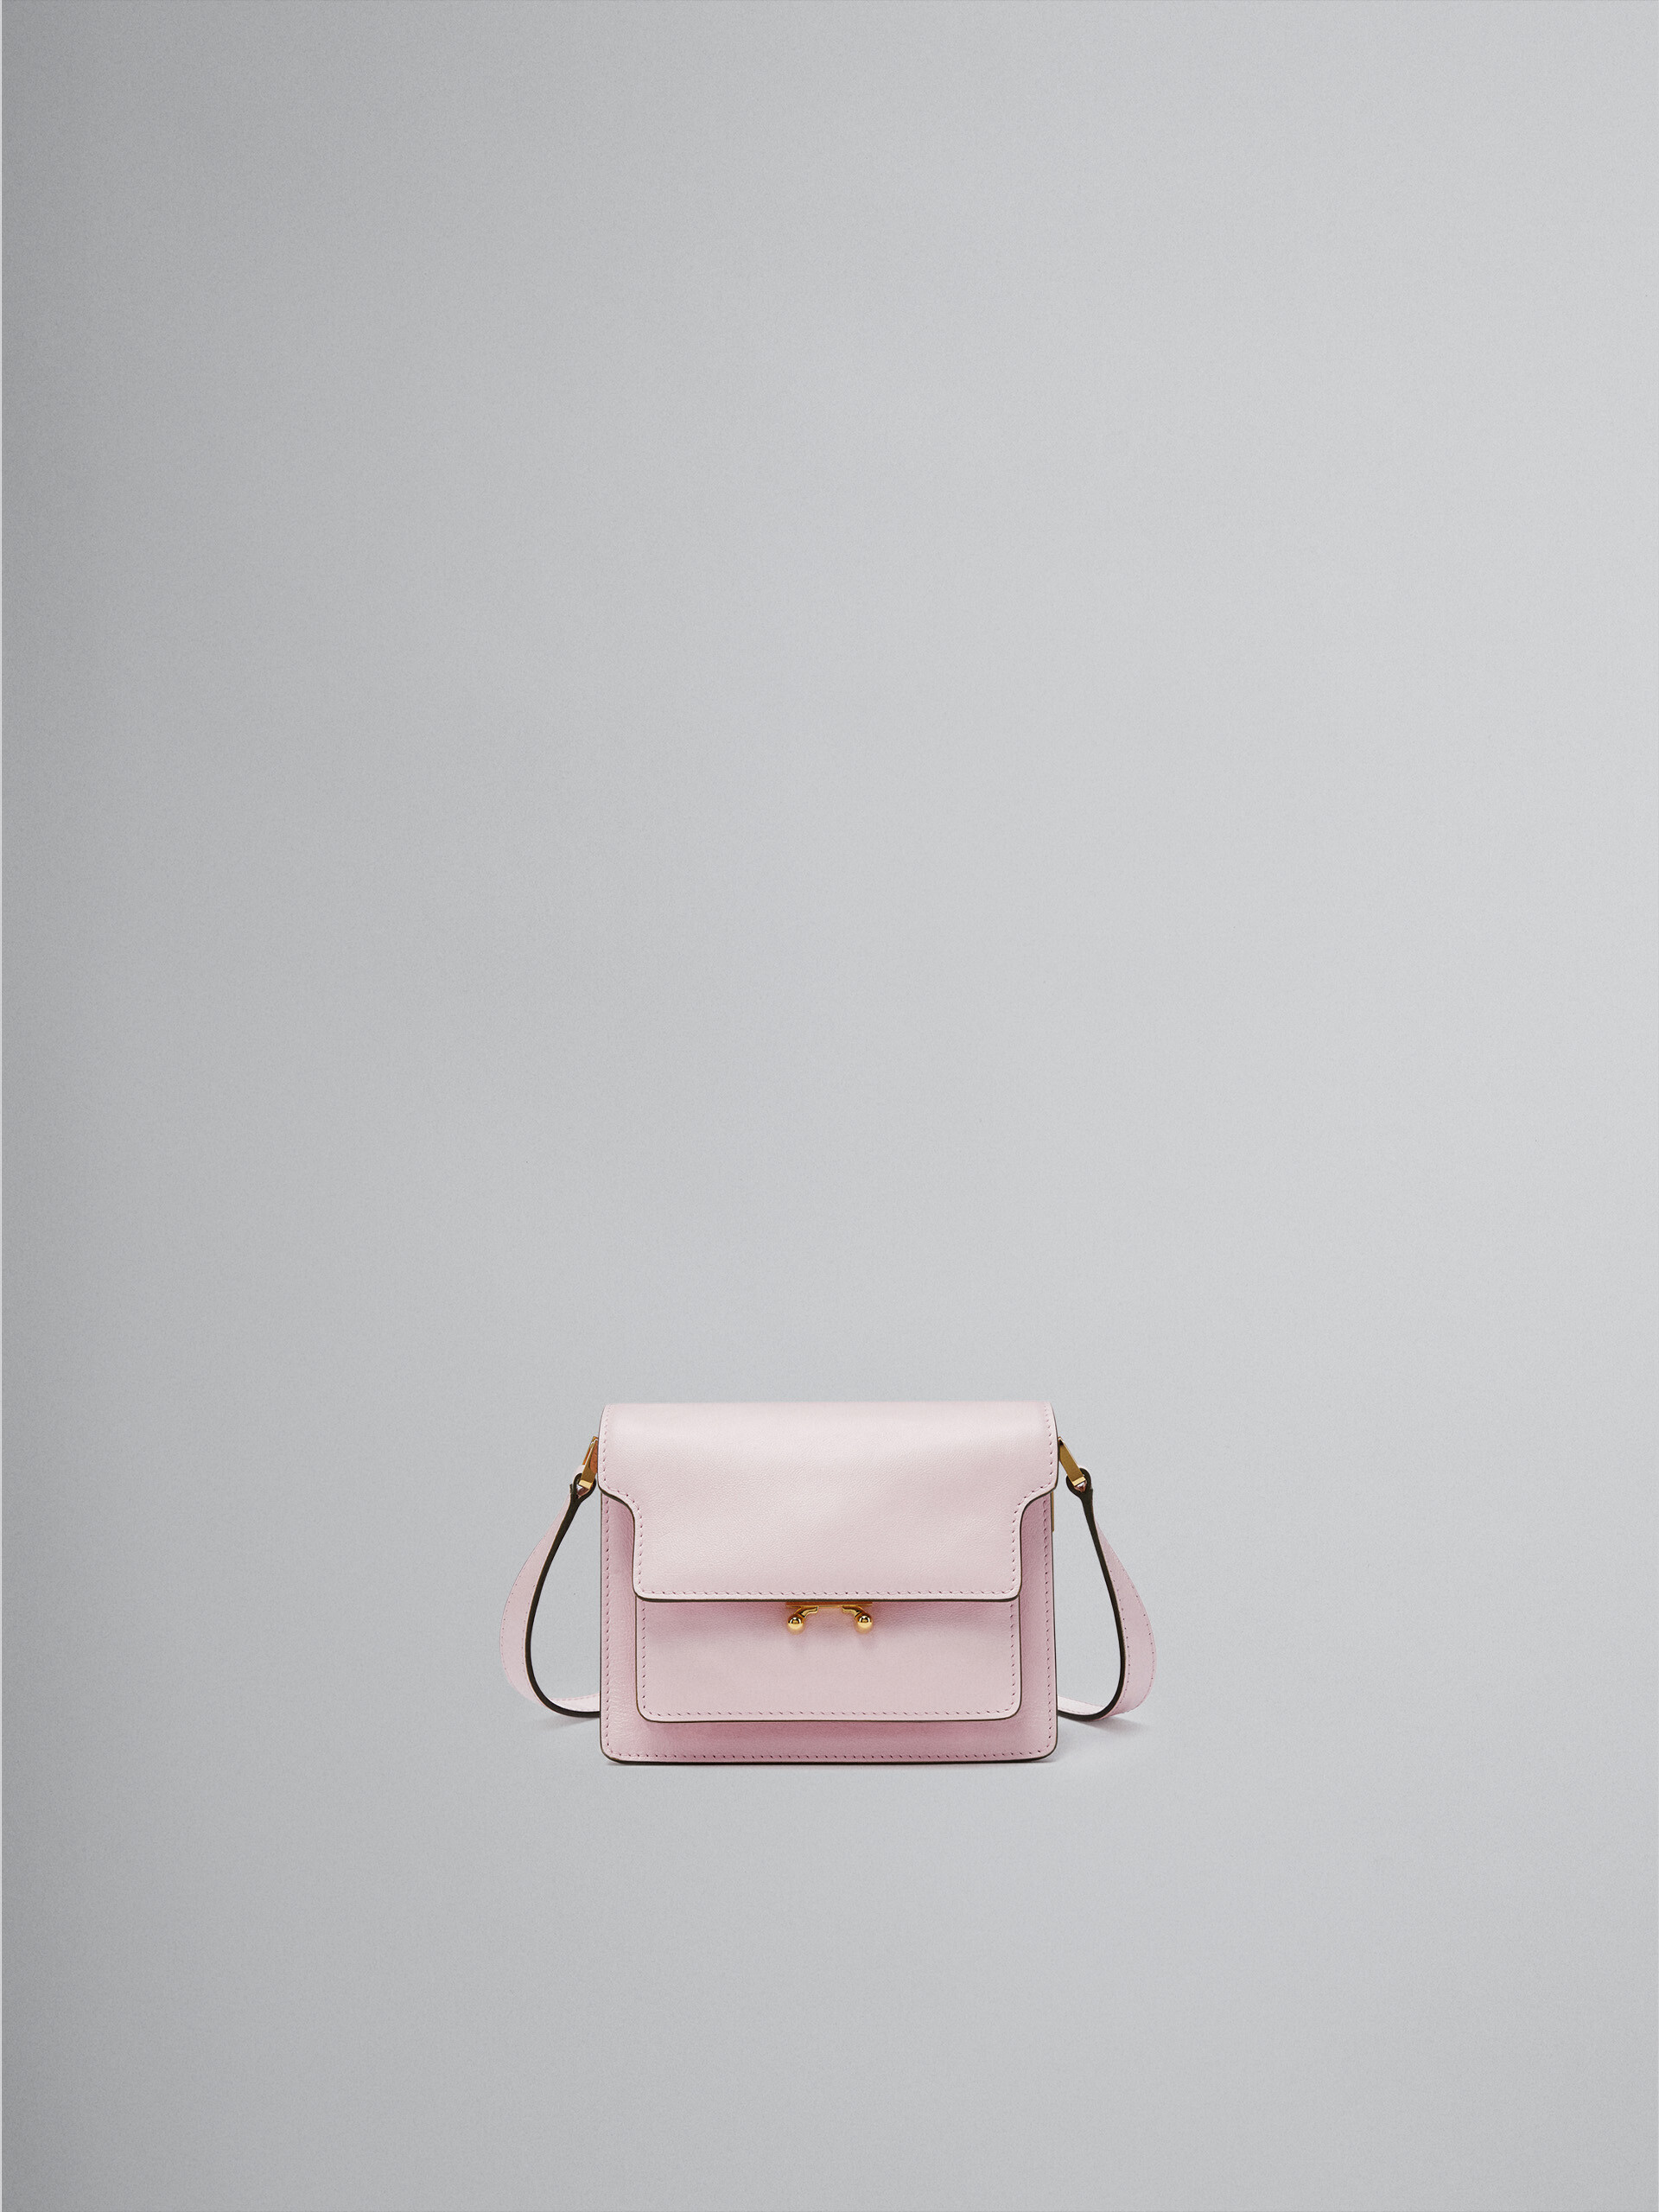 TRUNK SOFT mini bag in pink leather - Shoulder Bag - Image 1